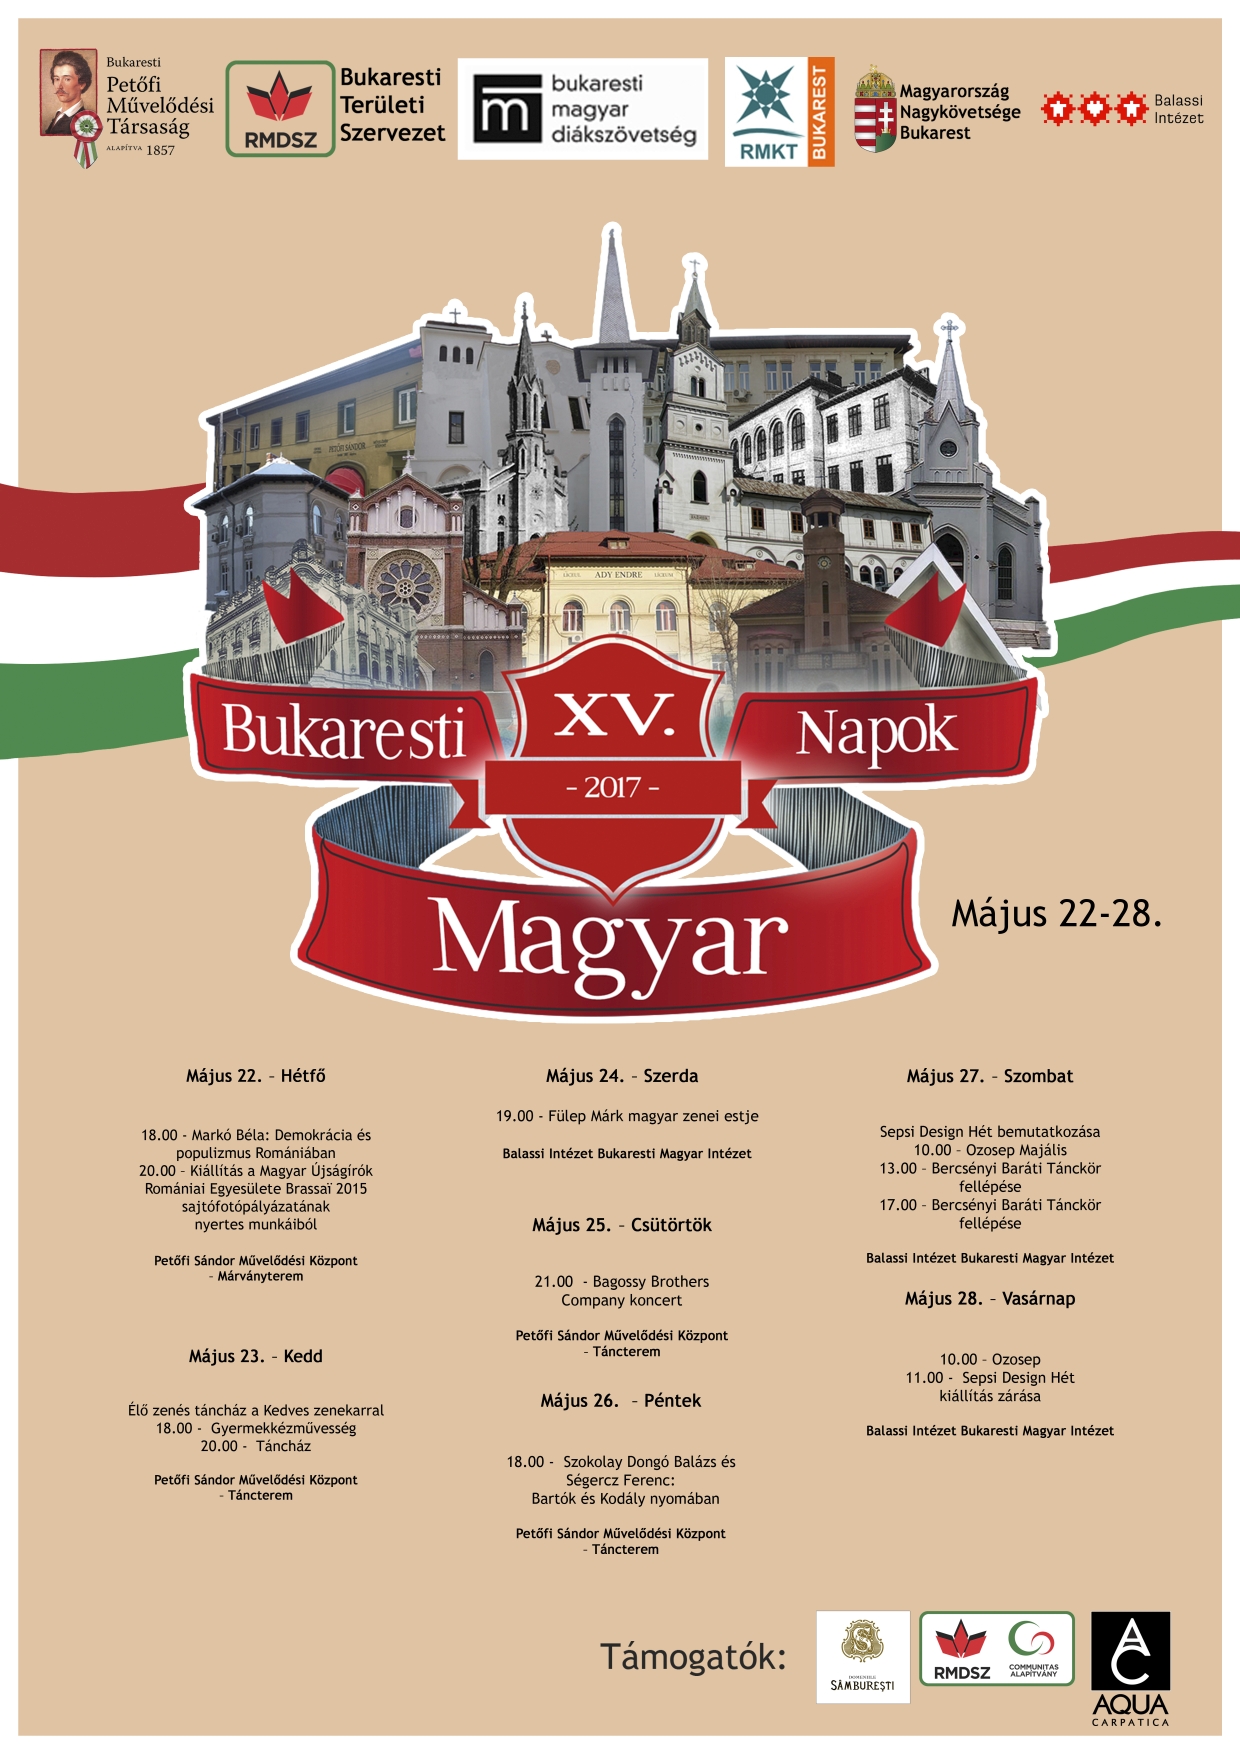 Bukaresti Magyar Napok XV.